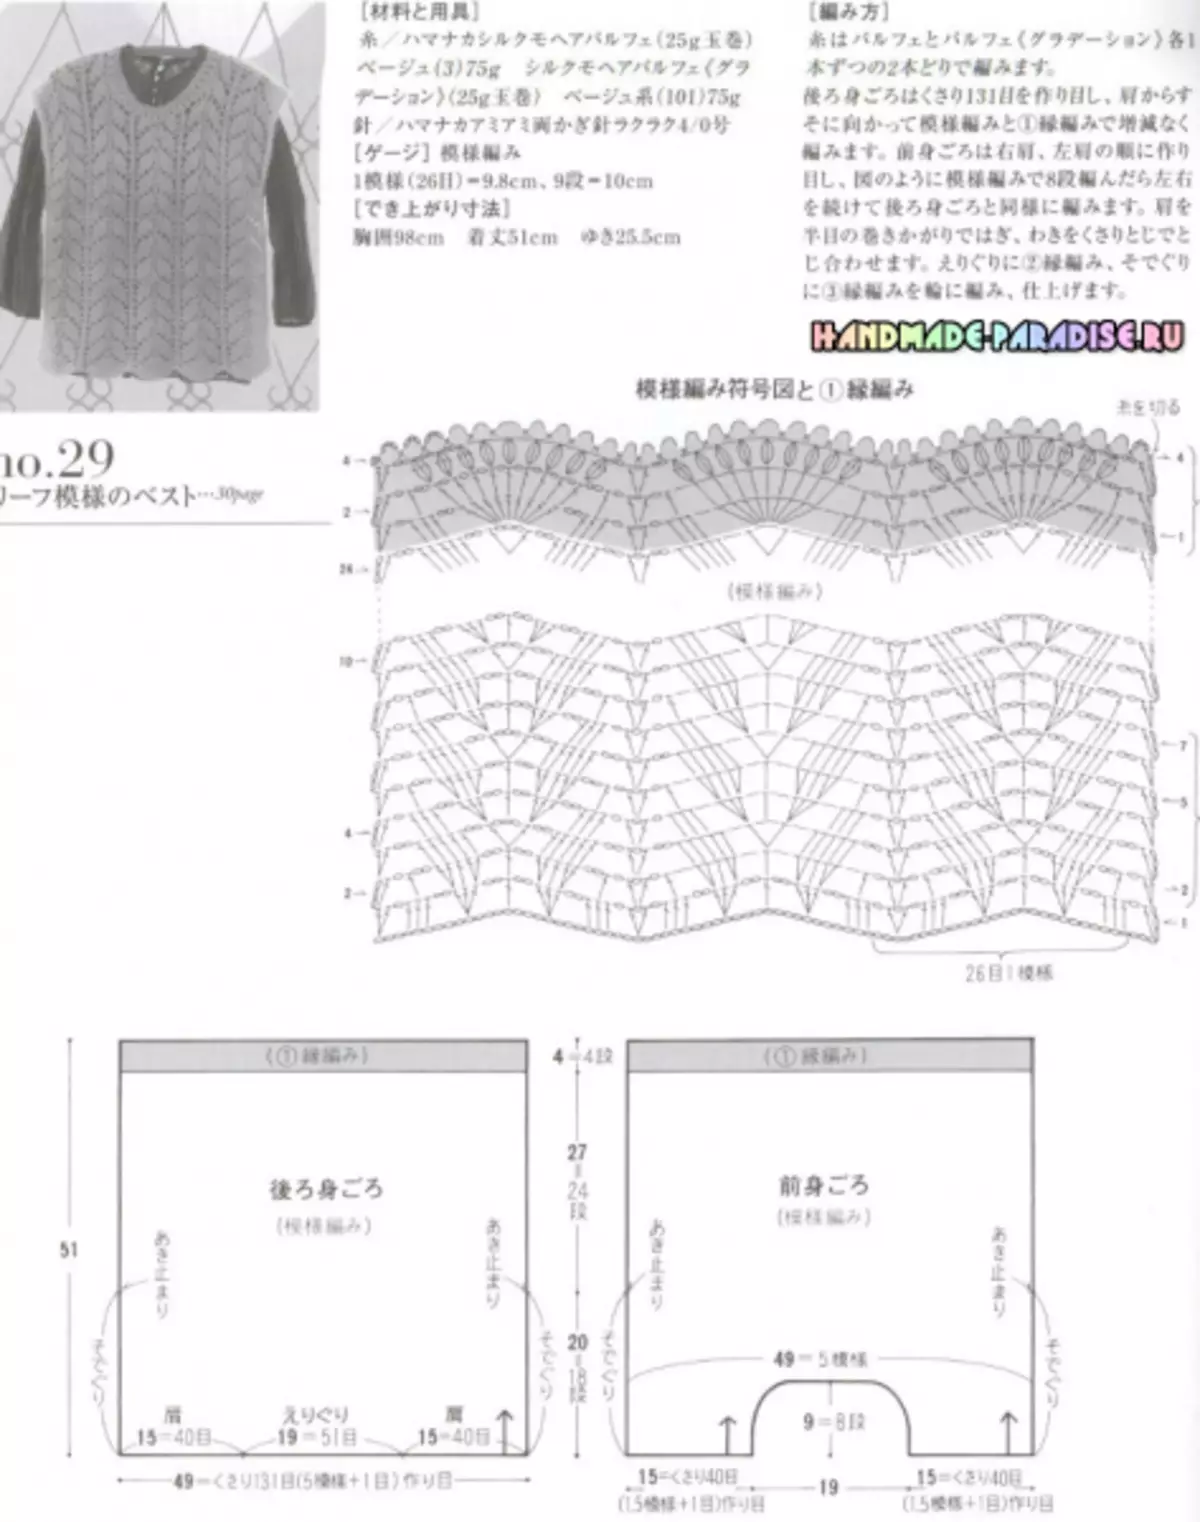 Елегантан кројење плетења. Јапански магазин са шемама